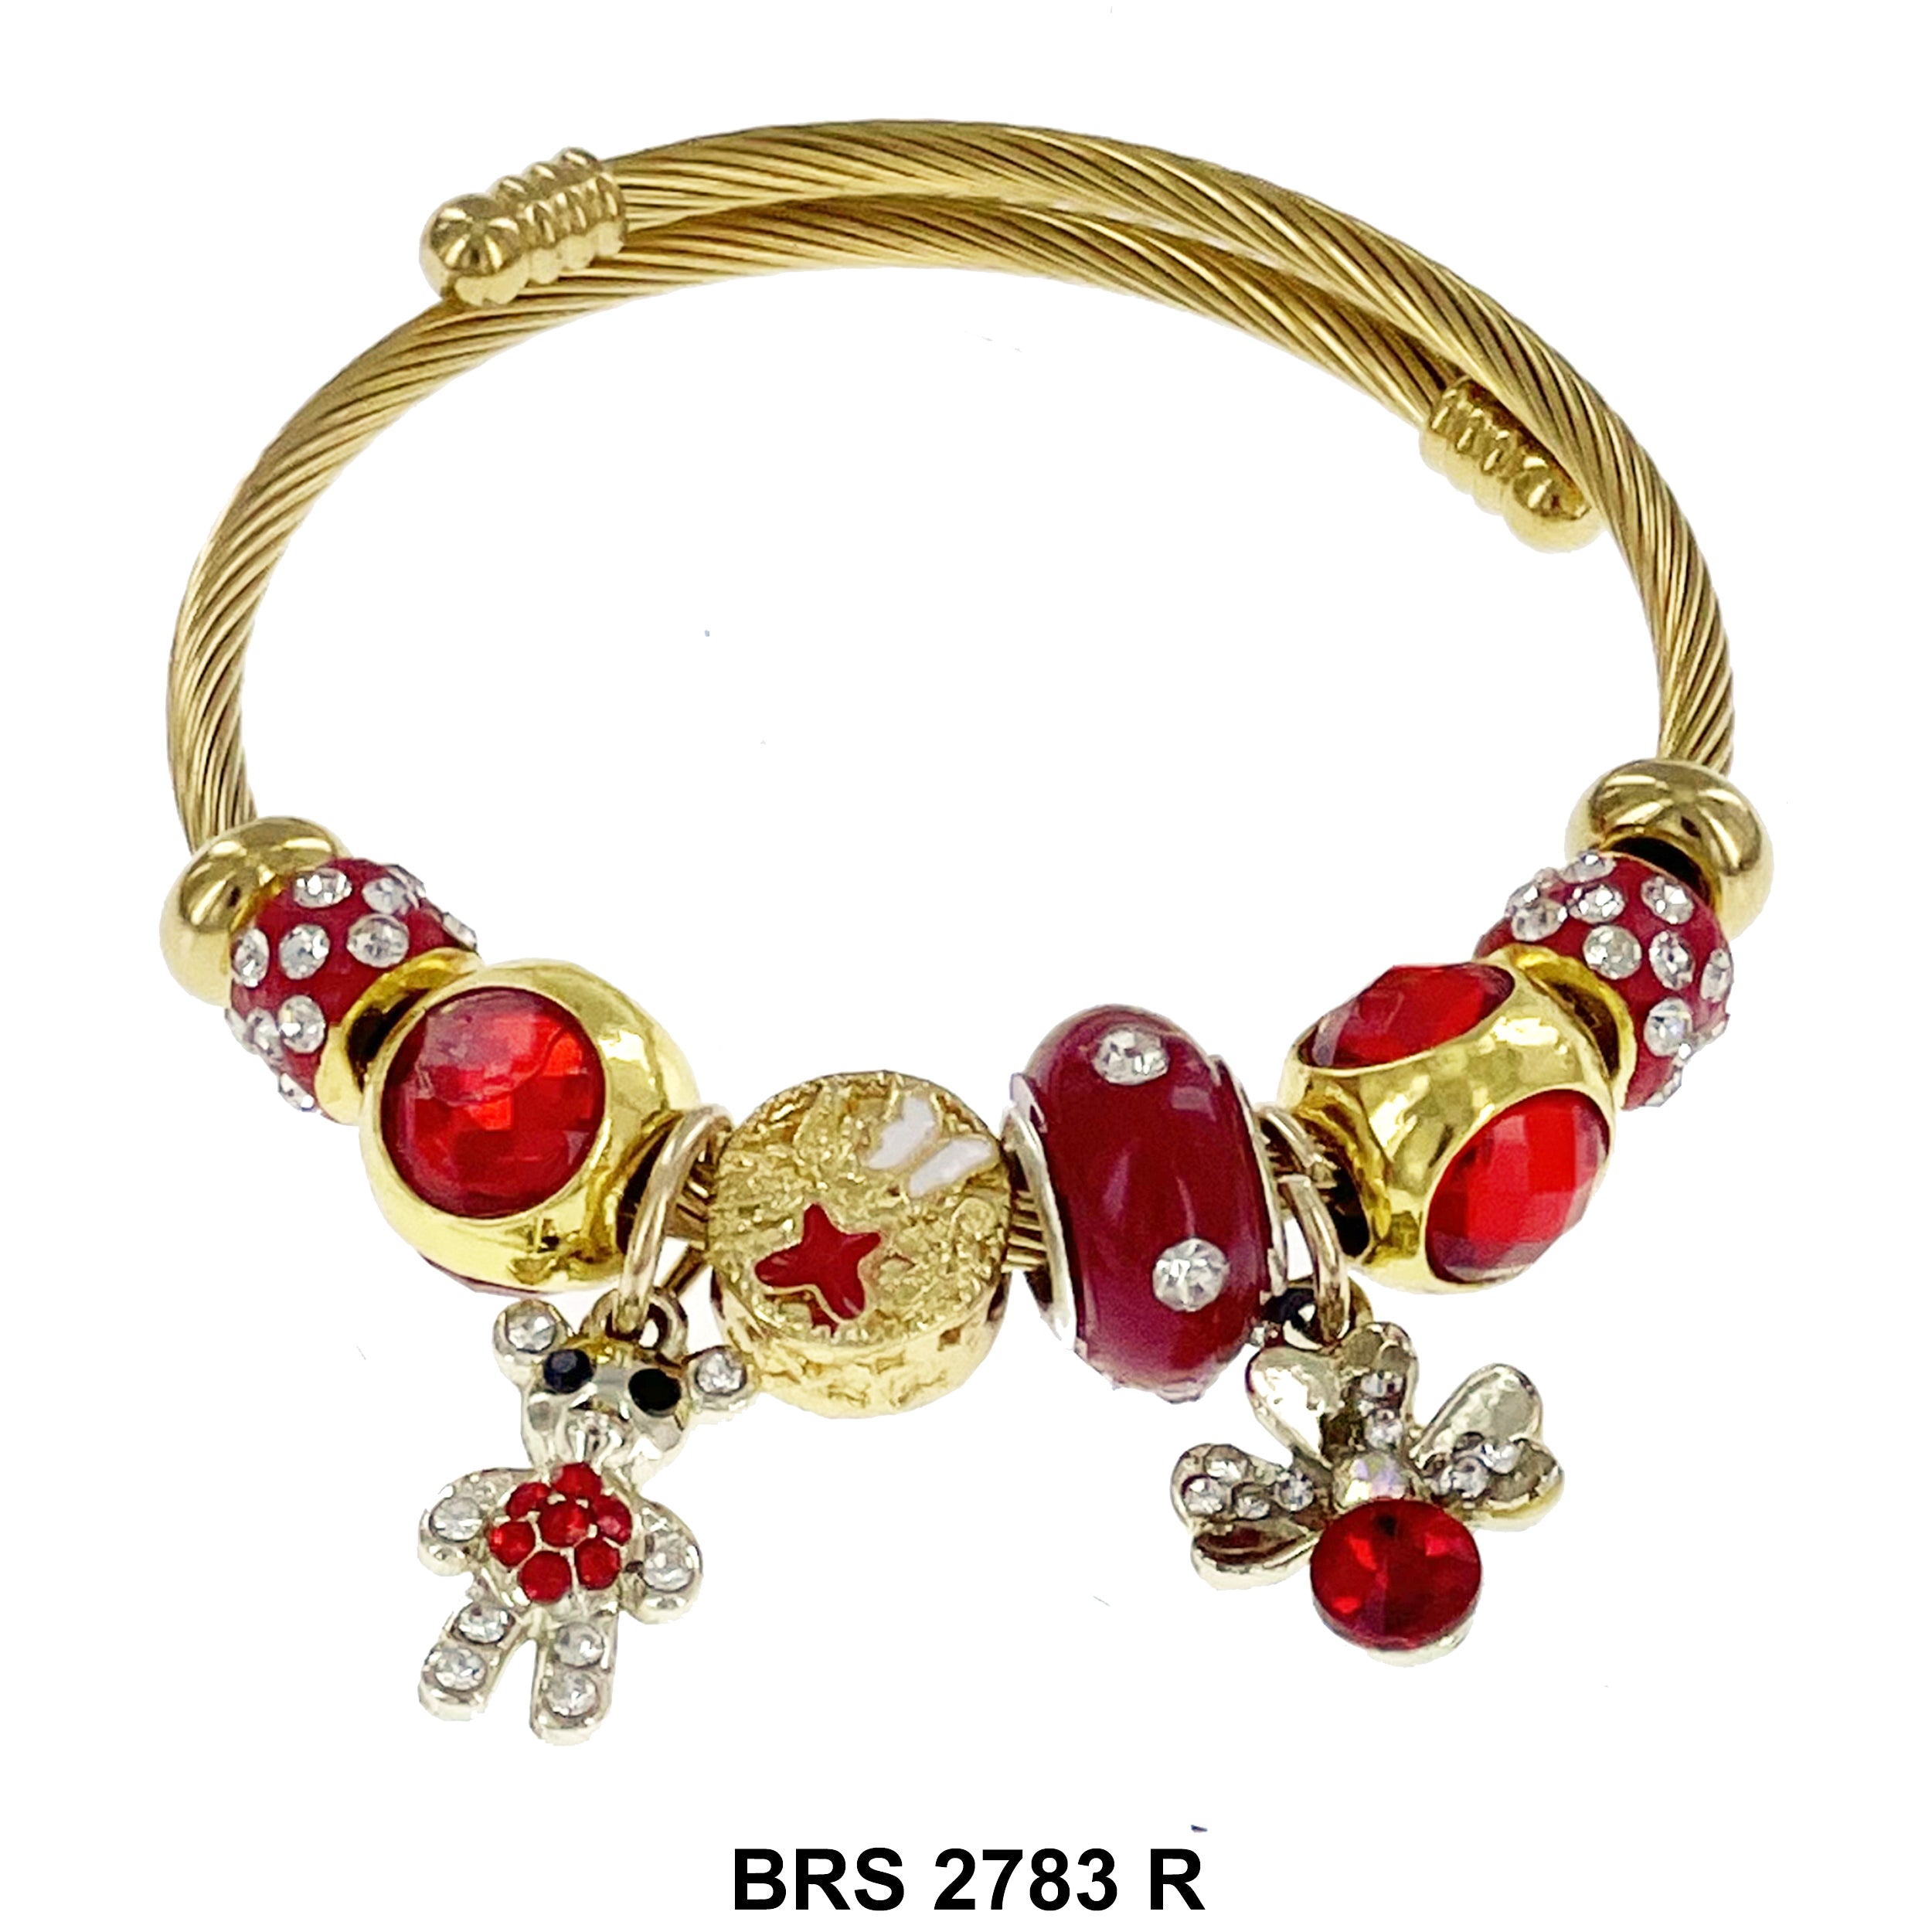 Hanging Charm Bracelet BRS 2783 R